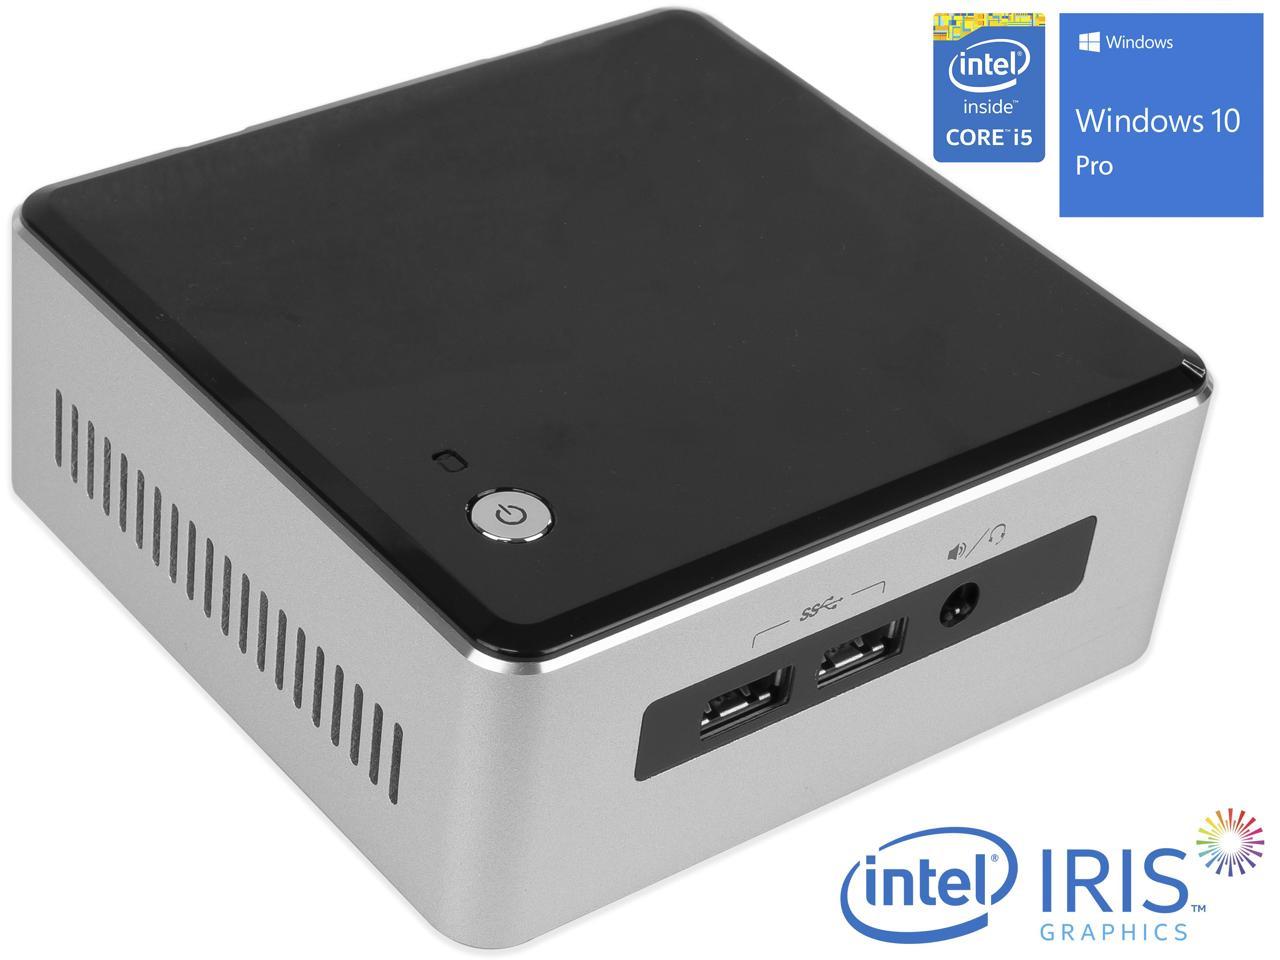 Intel NUC5i5RYH Mini PC, Intel Core i5-5250U Upto 2.7GHz, 8GB RAM, 128GB SSD, Micro HDMI, Mini DisplayPort, Wi-Fi, Bluetooth, Windows 10 Pro